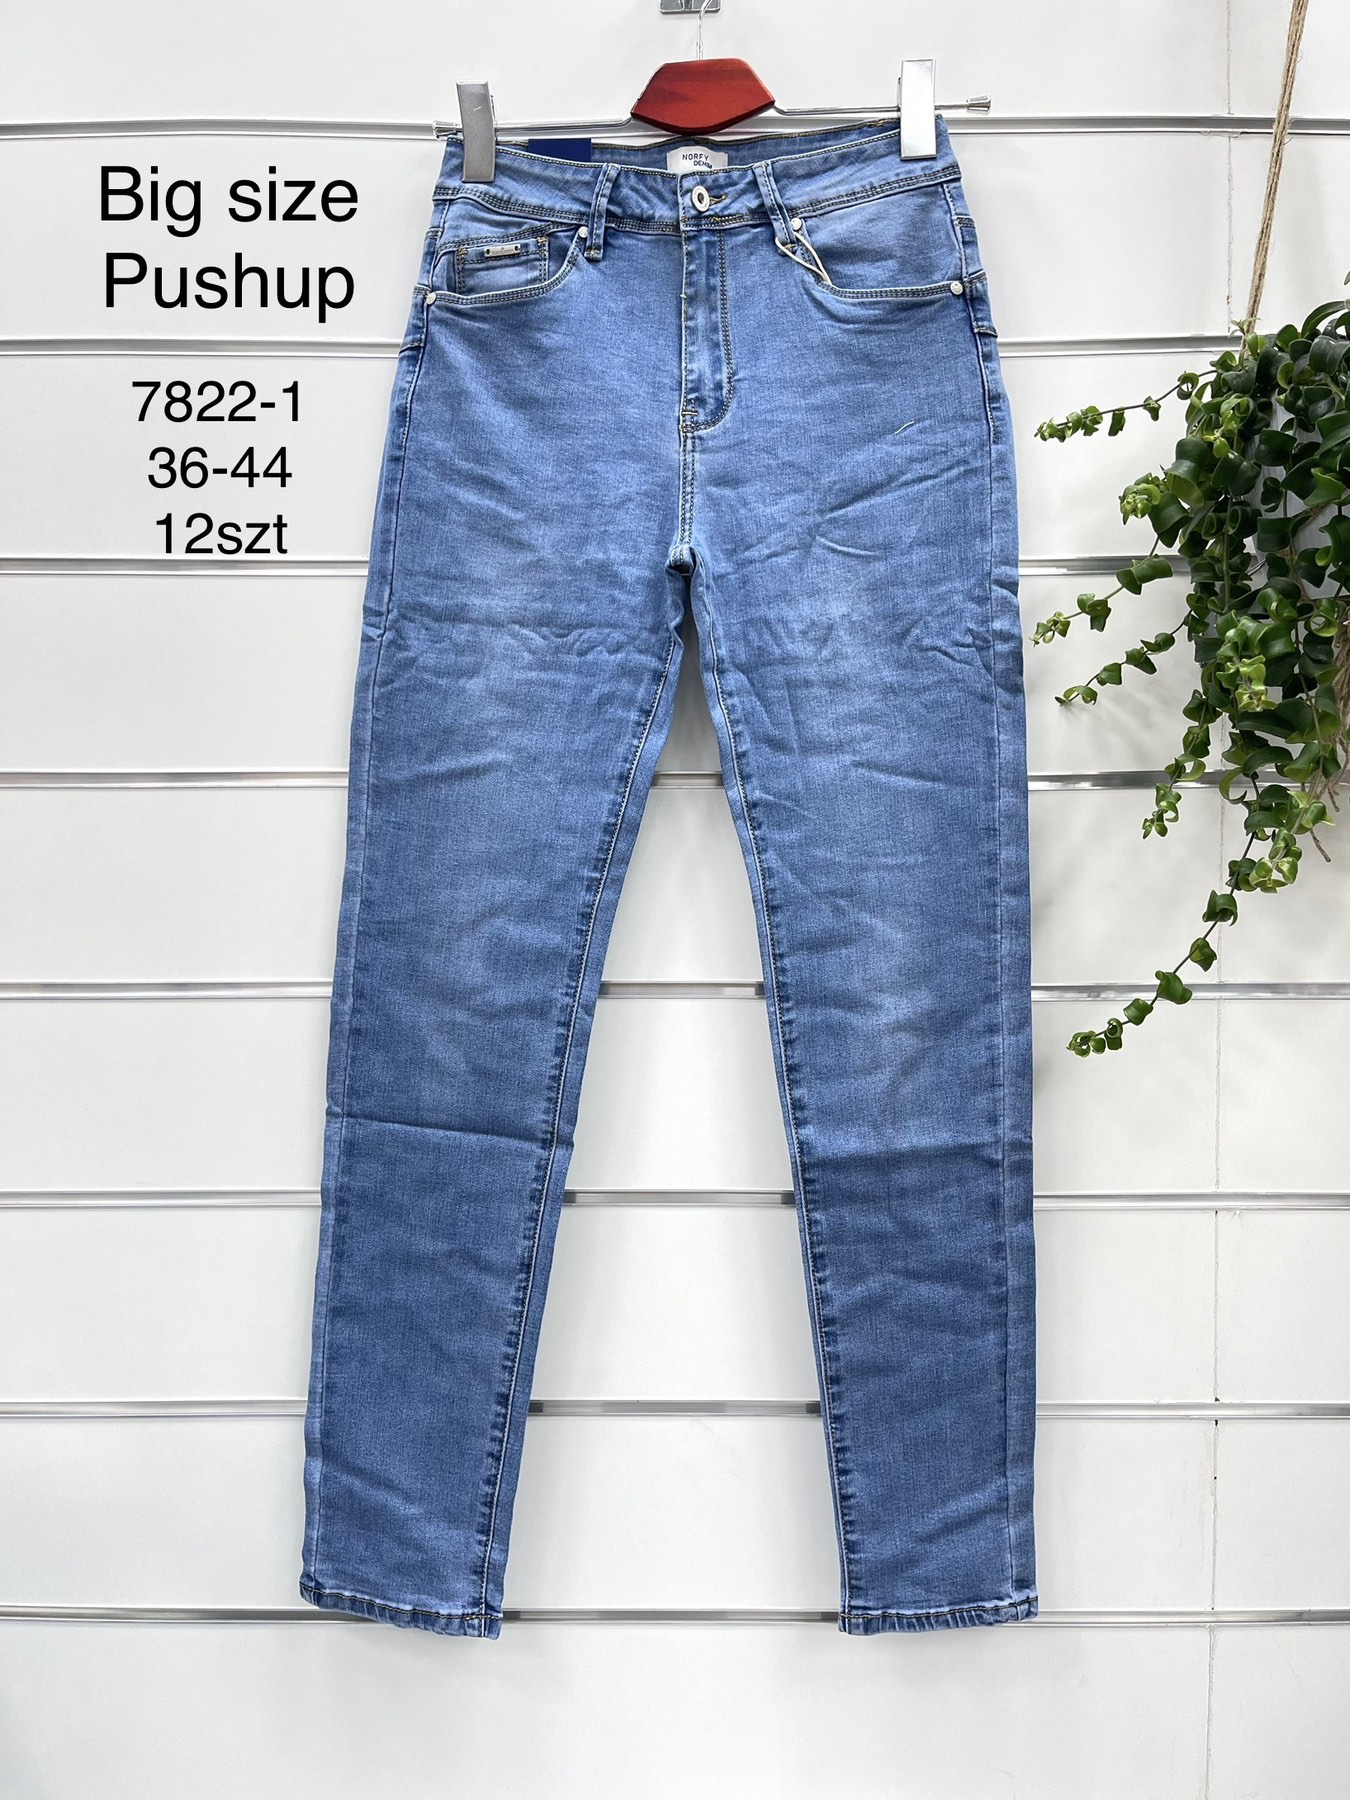 Spodnie  damskie jeans   Roz  36-44  1 kolor . Paczka 12szt